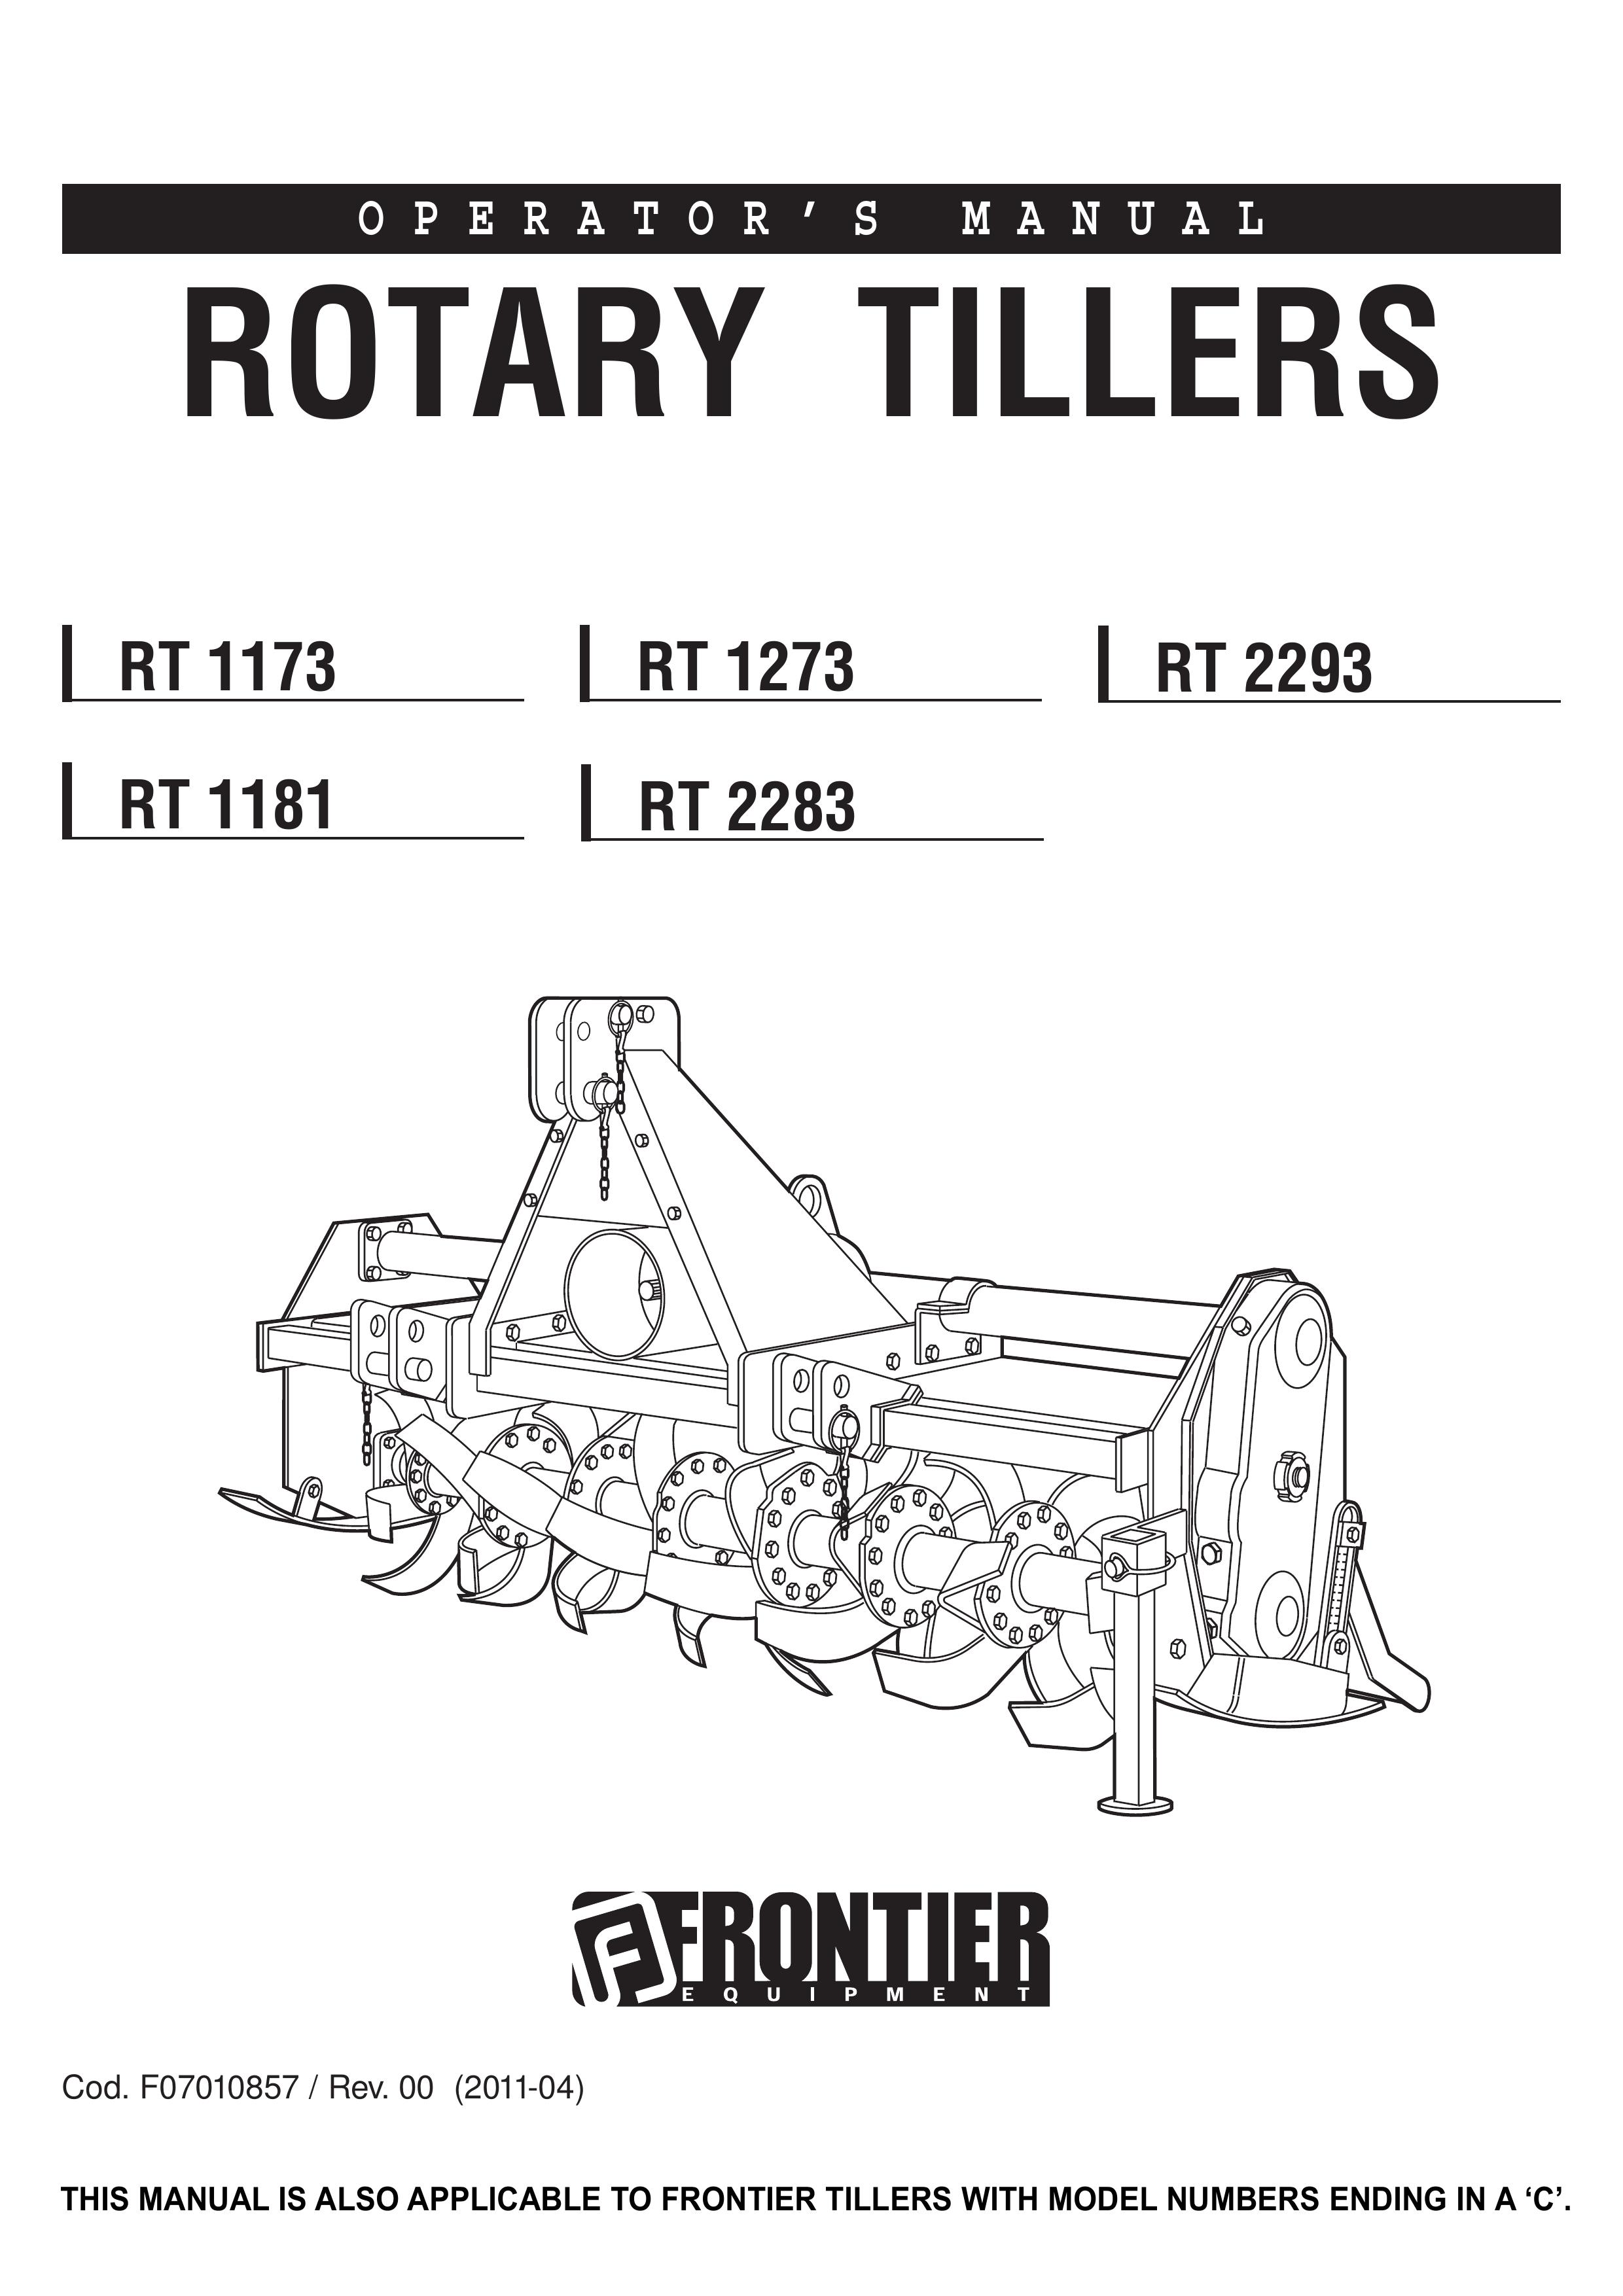 John Deere RT 1273 Tiller User Manual